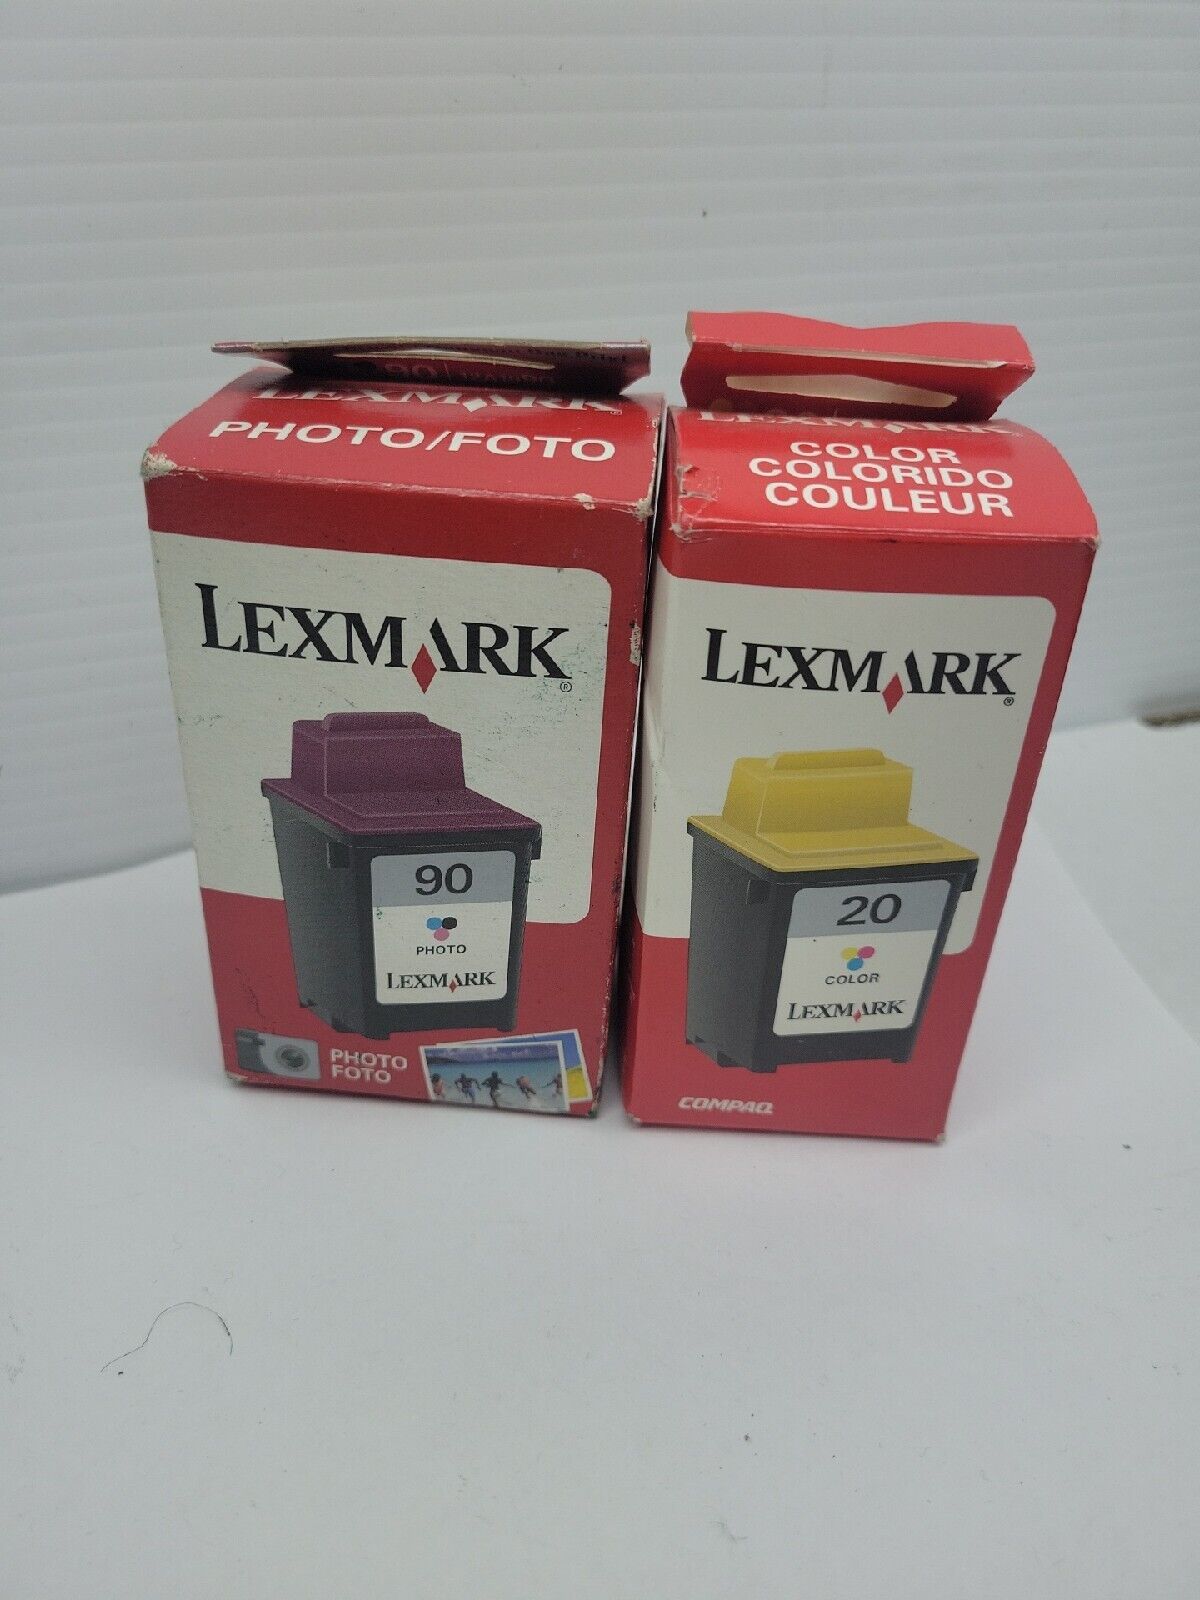 Lexmark #90 #20 Photo Inkjet Cartridge - New and Sealed